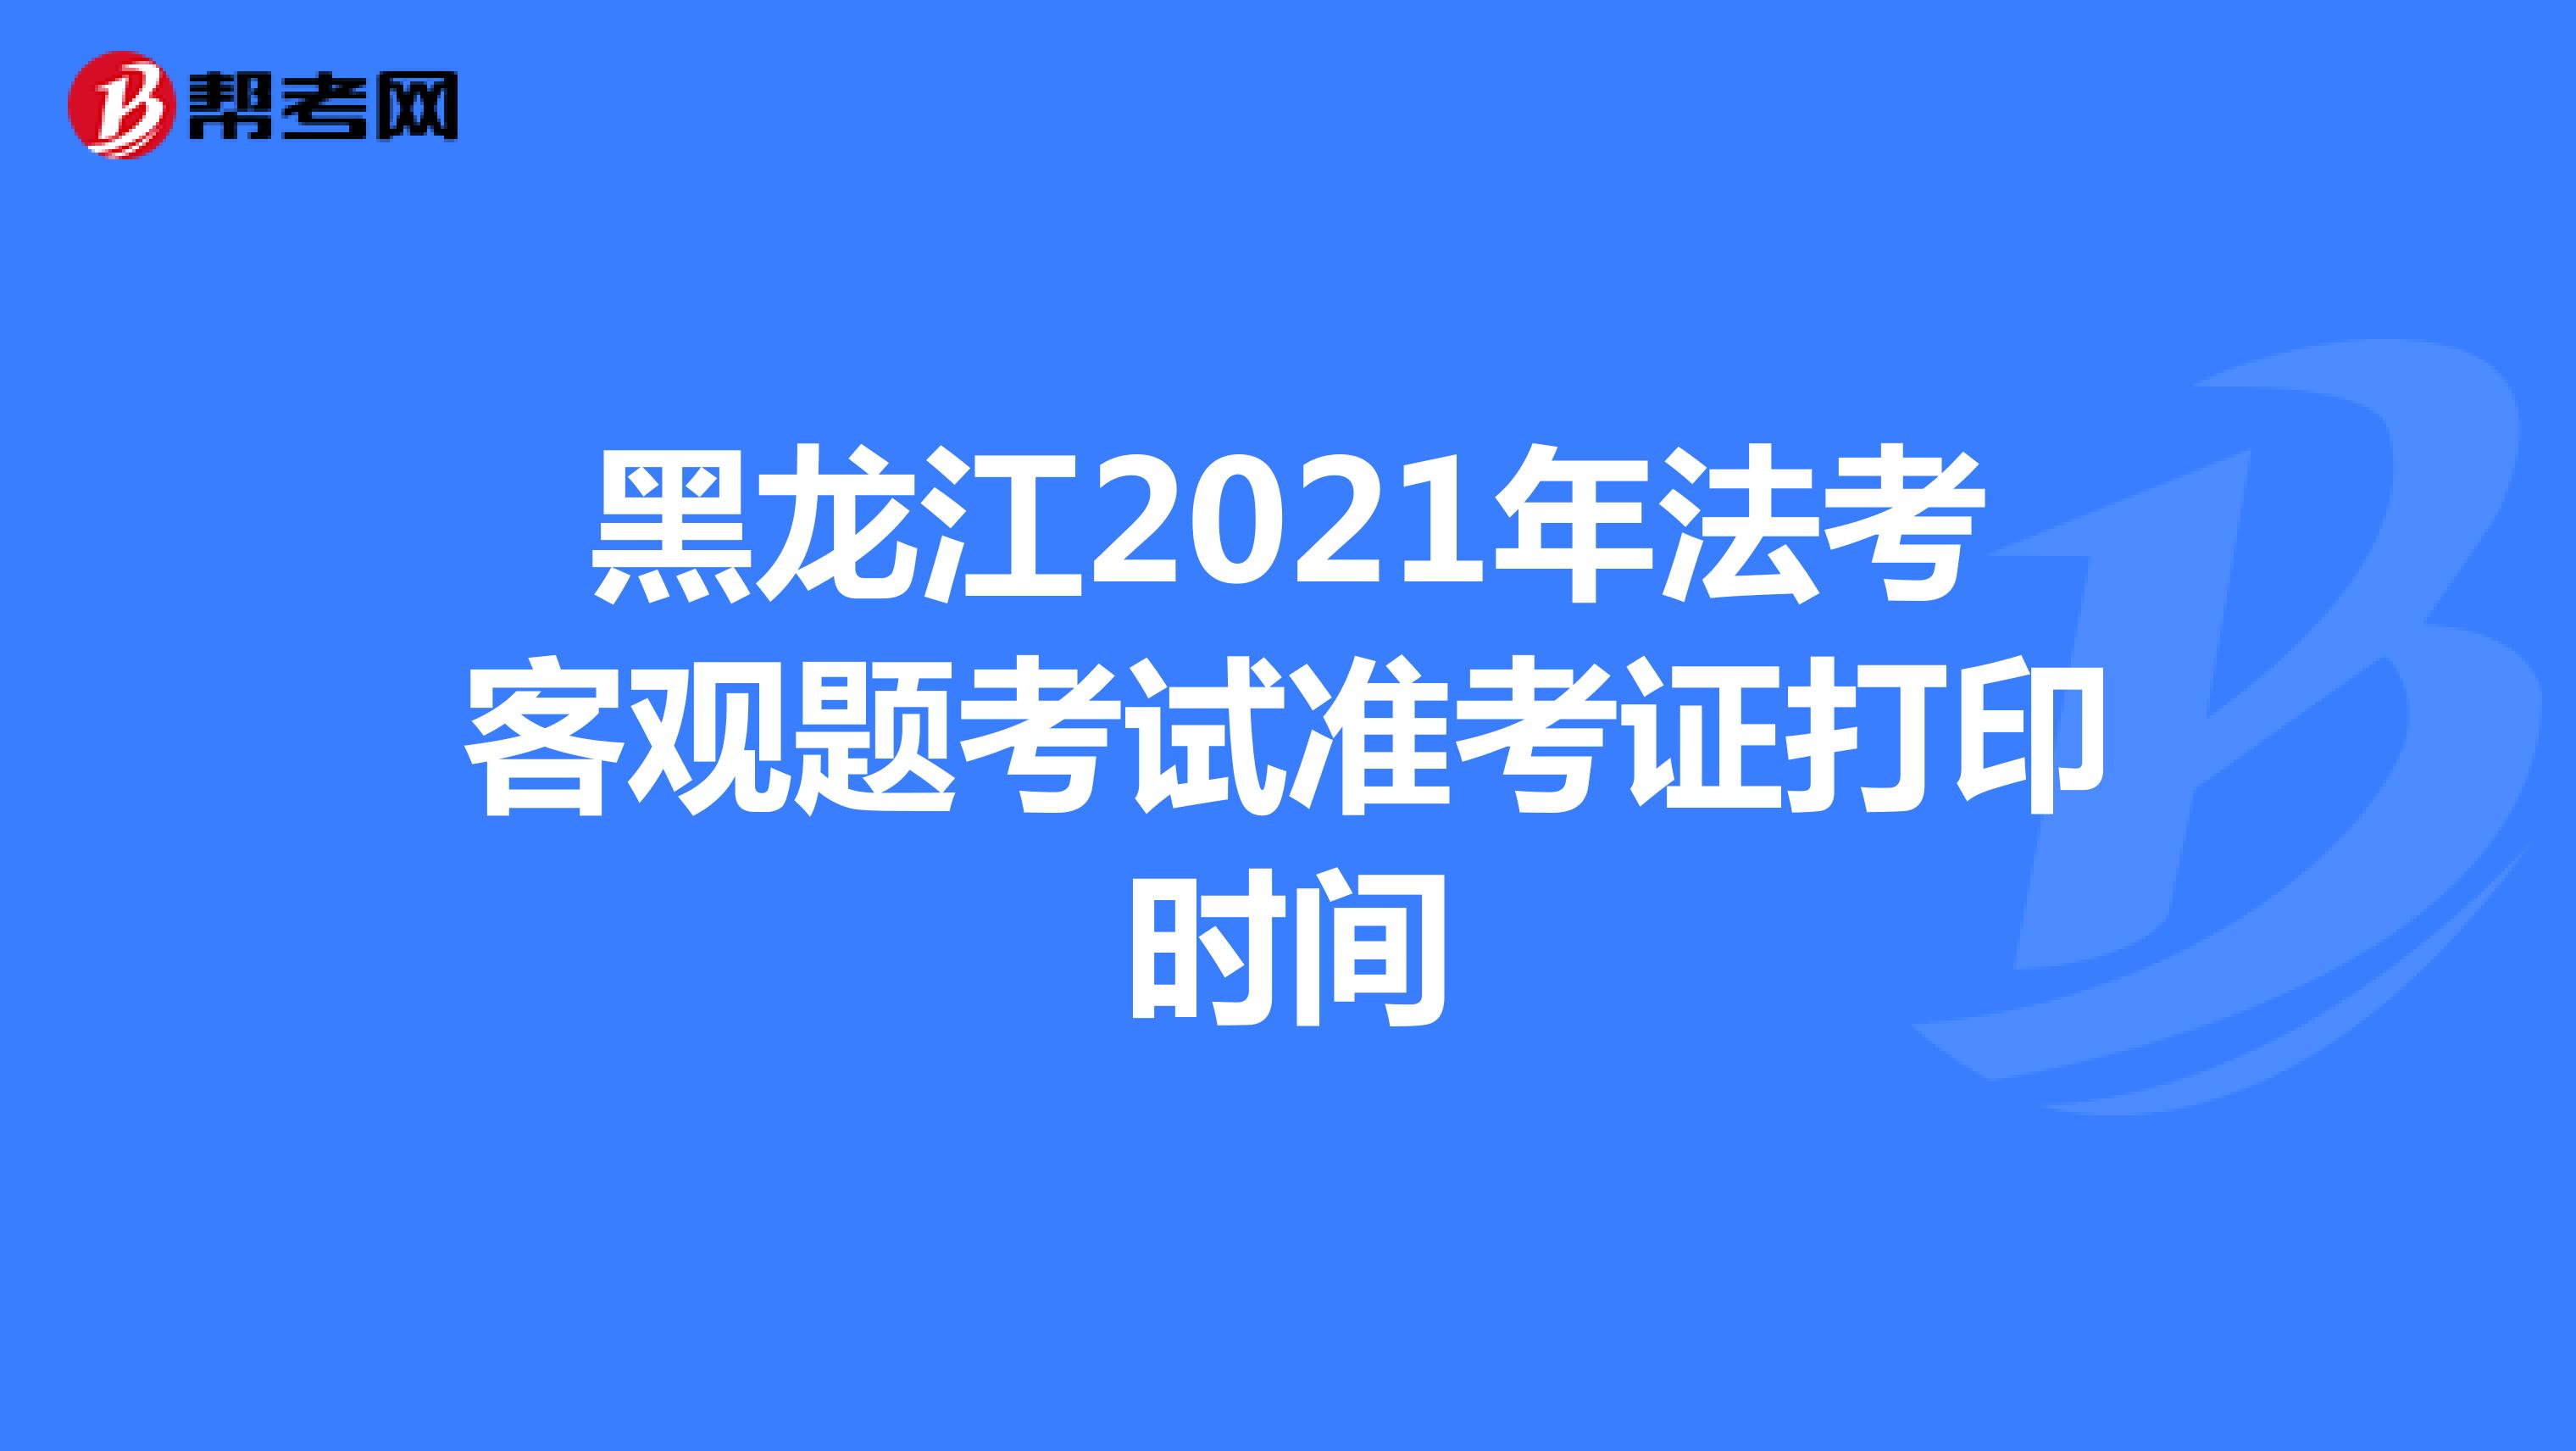 黑龙江2021年法考客观题考试准考证打印时间